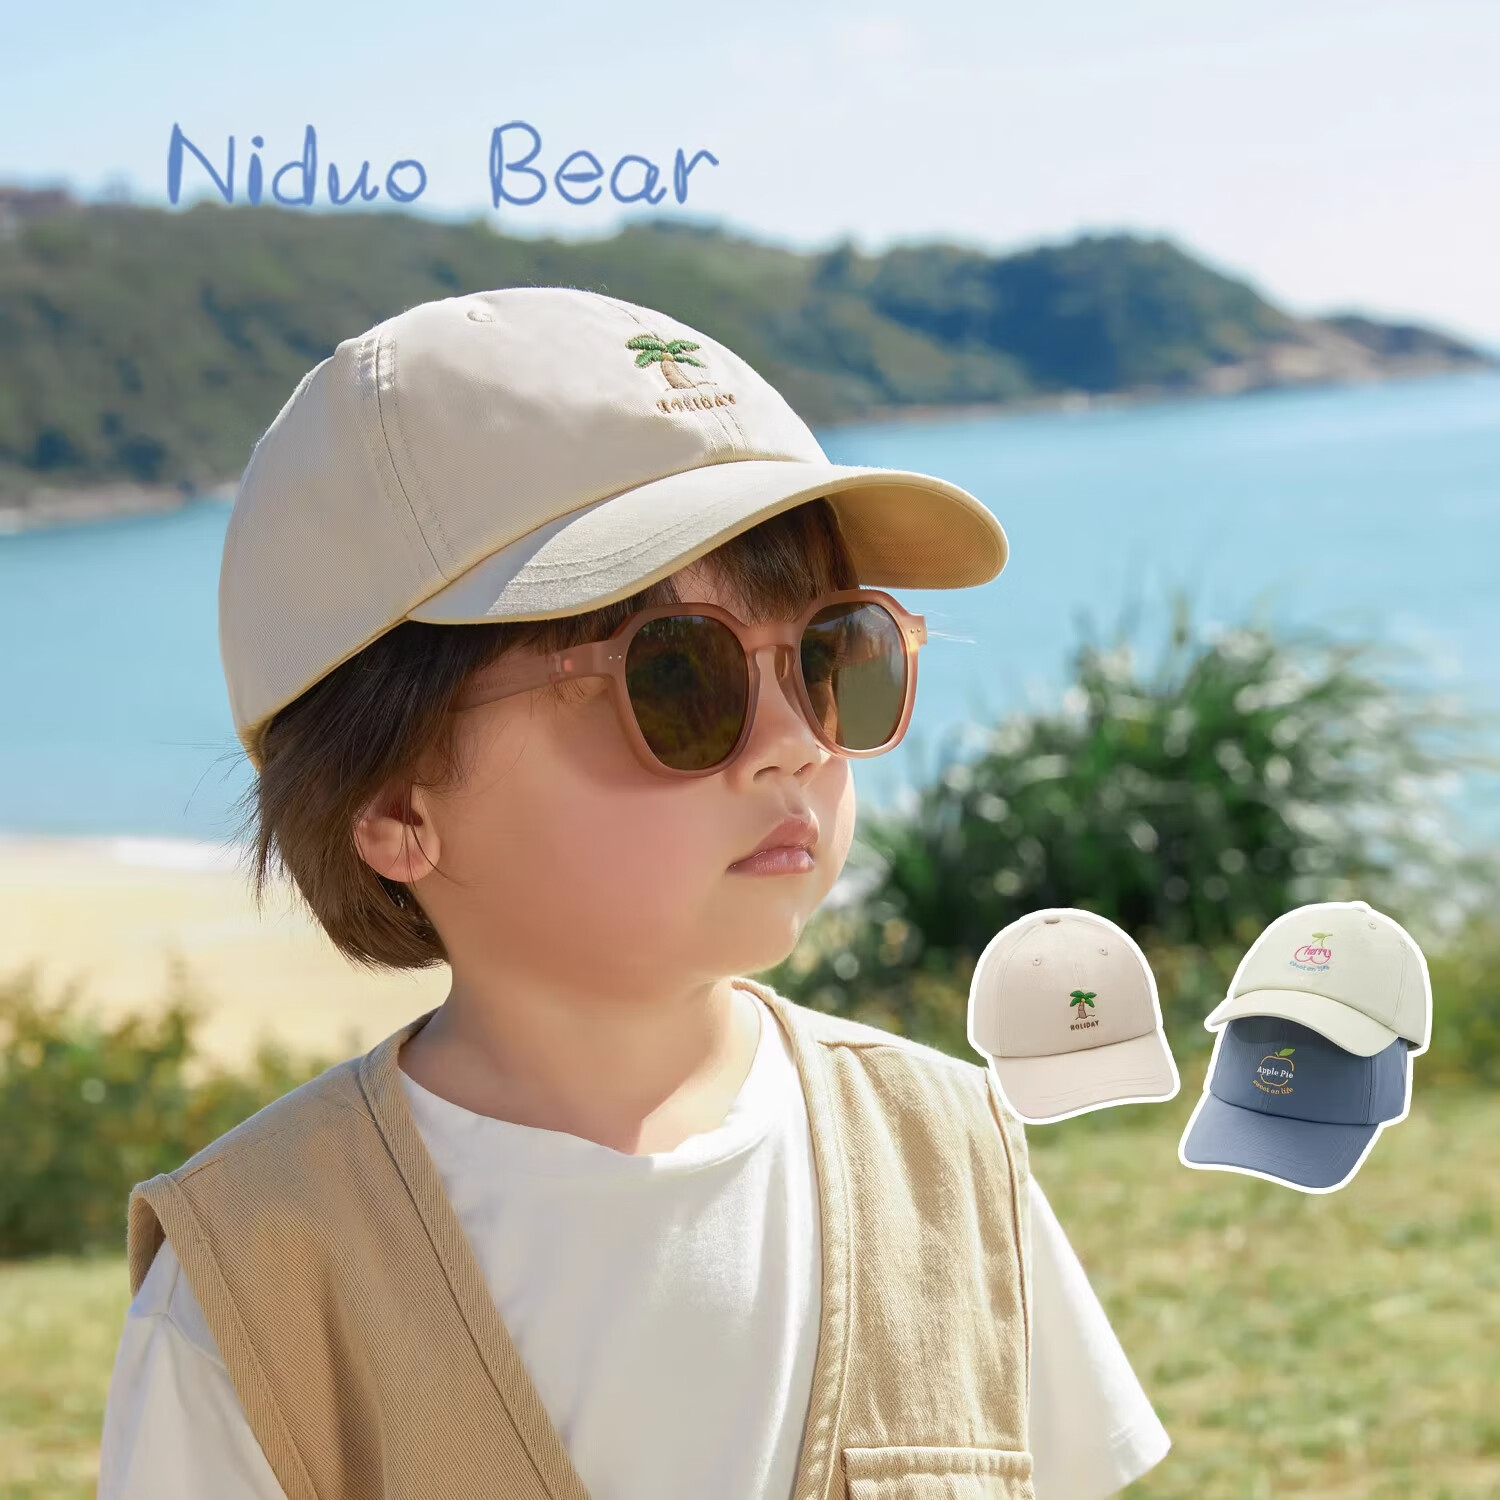 尼多熊儿童帽子遮阳帽宝宝鸭舌帽男女孩纯棉棒球帽婴儿帽子夏季透气